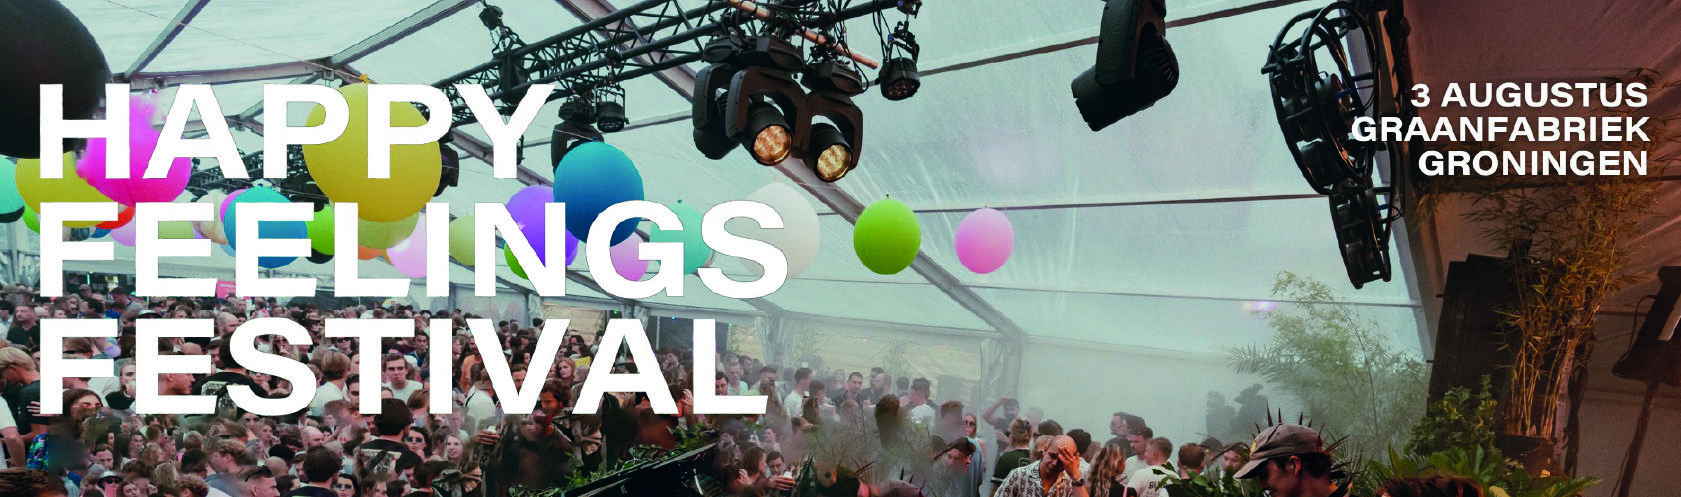 Happy Feelings Festival Groningen banner_large_desktop